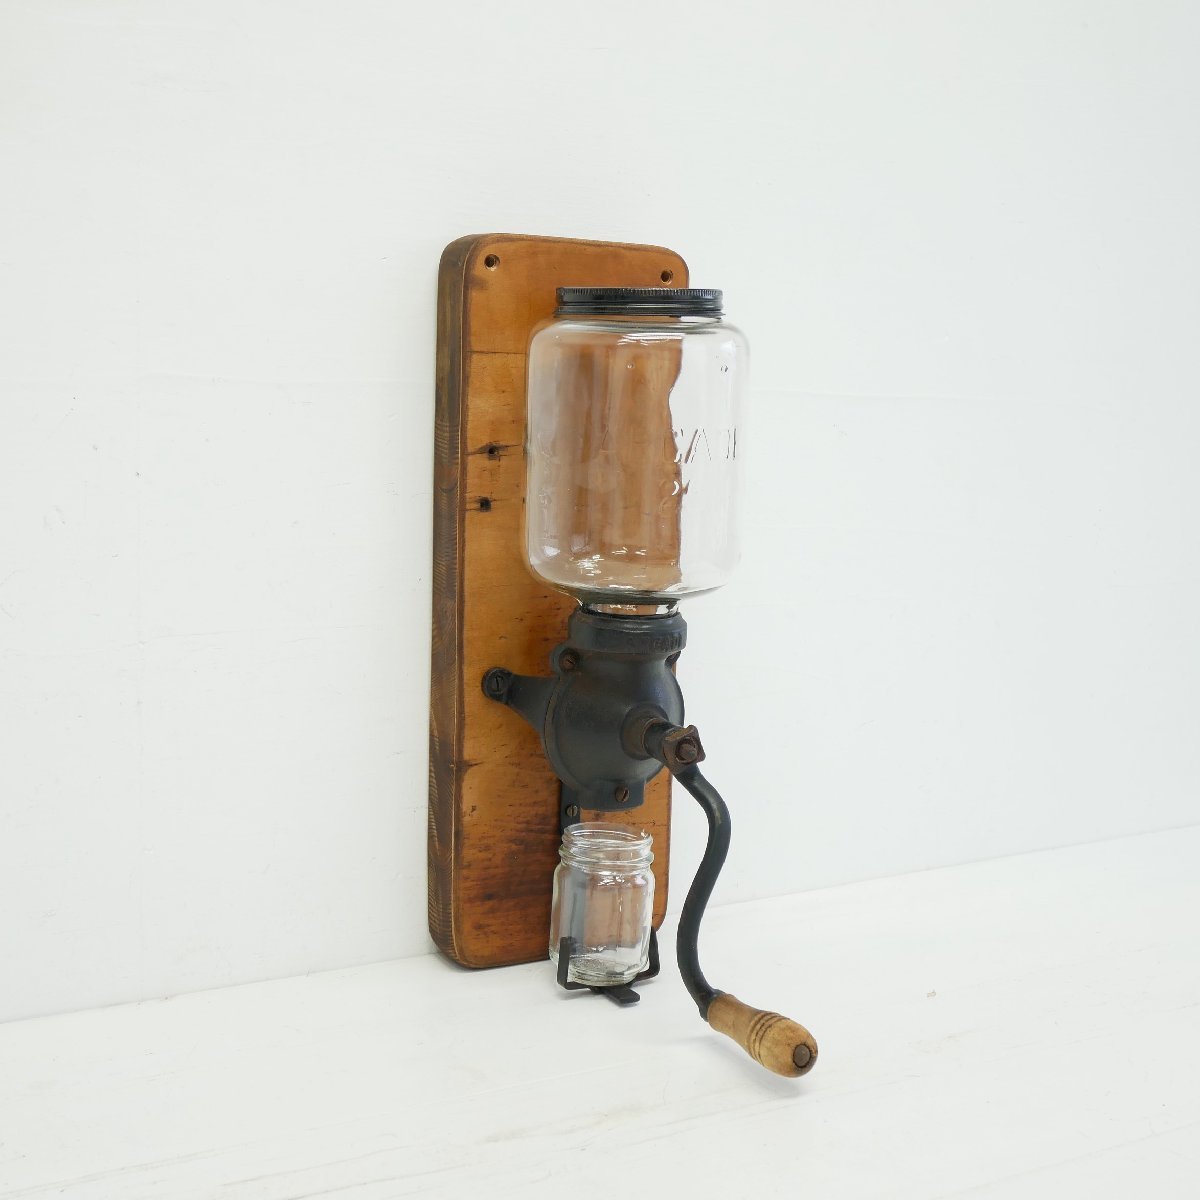 1910's アメリカ アンティーク コーヒーグラインダー ARCADE 25 / ミル カフェ ディスプレイ小物 キッチン雑貨 #506-62-809